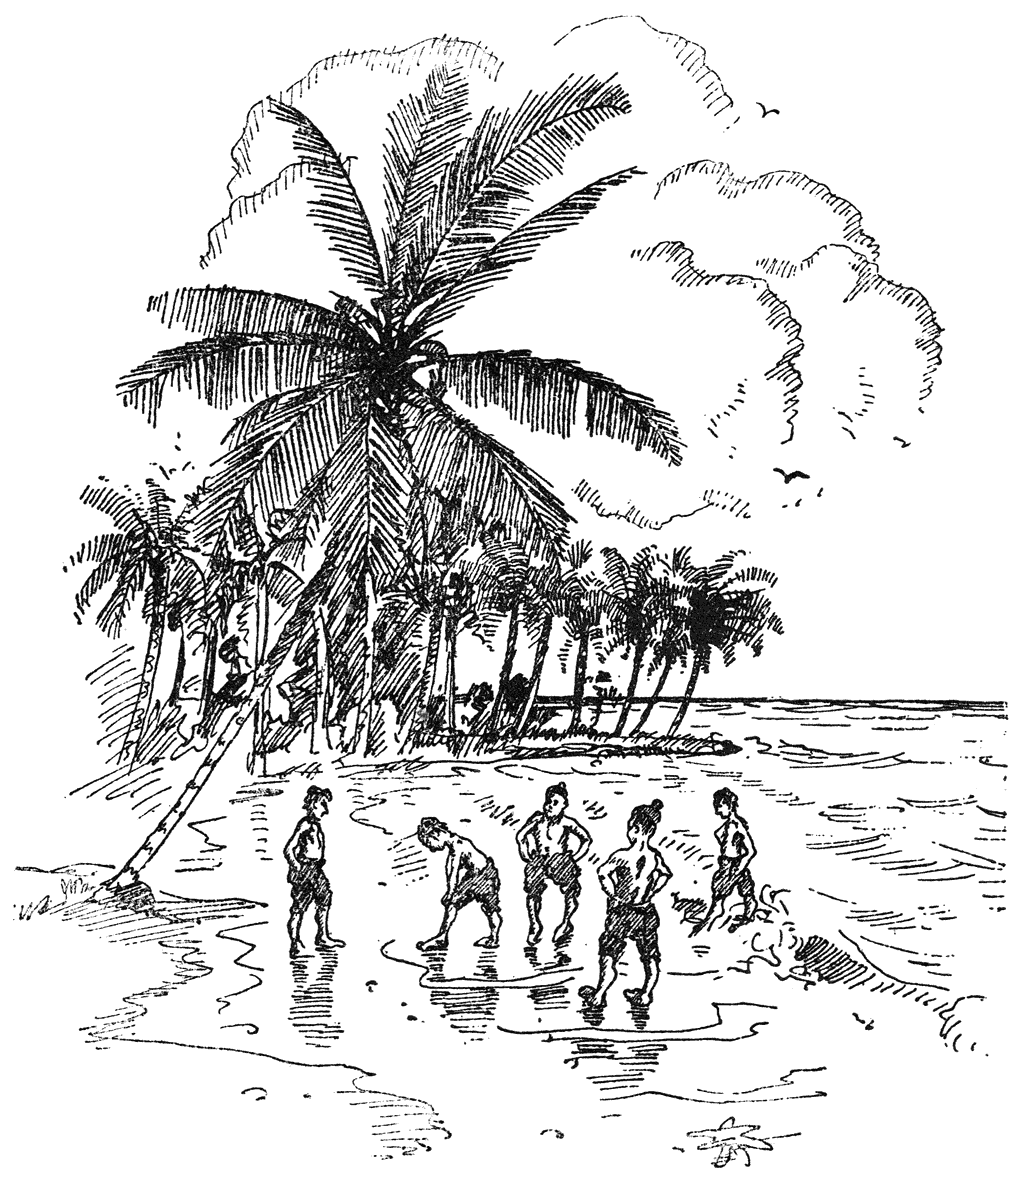 Vijf jongens op tropisch strand.